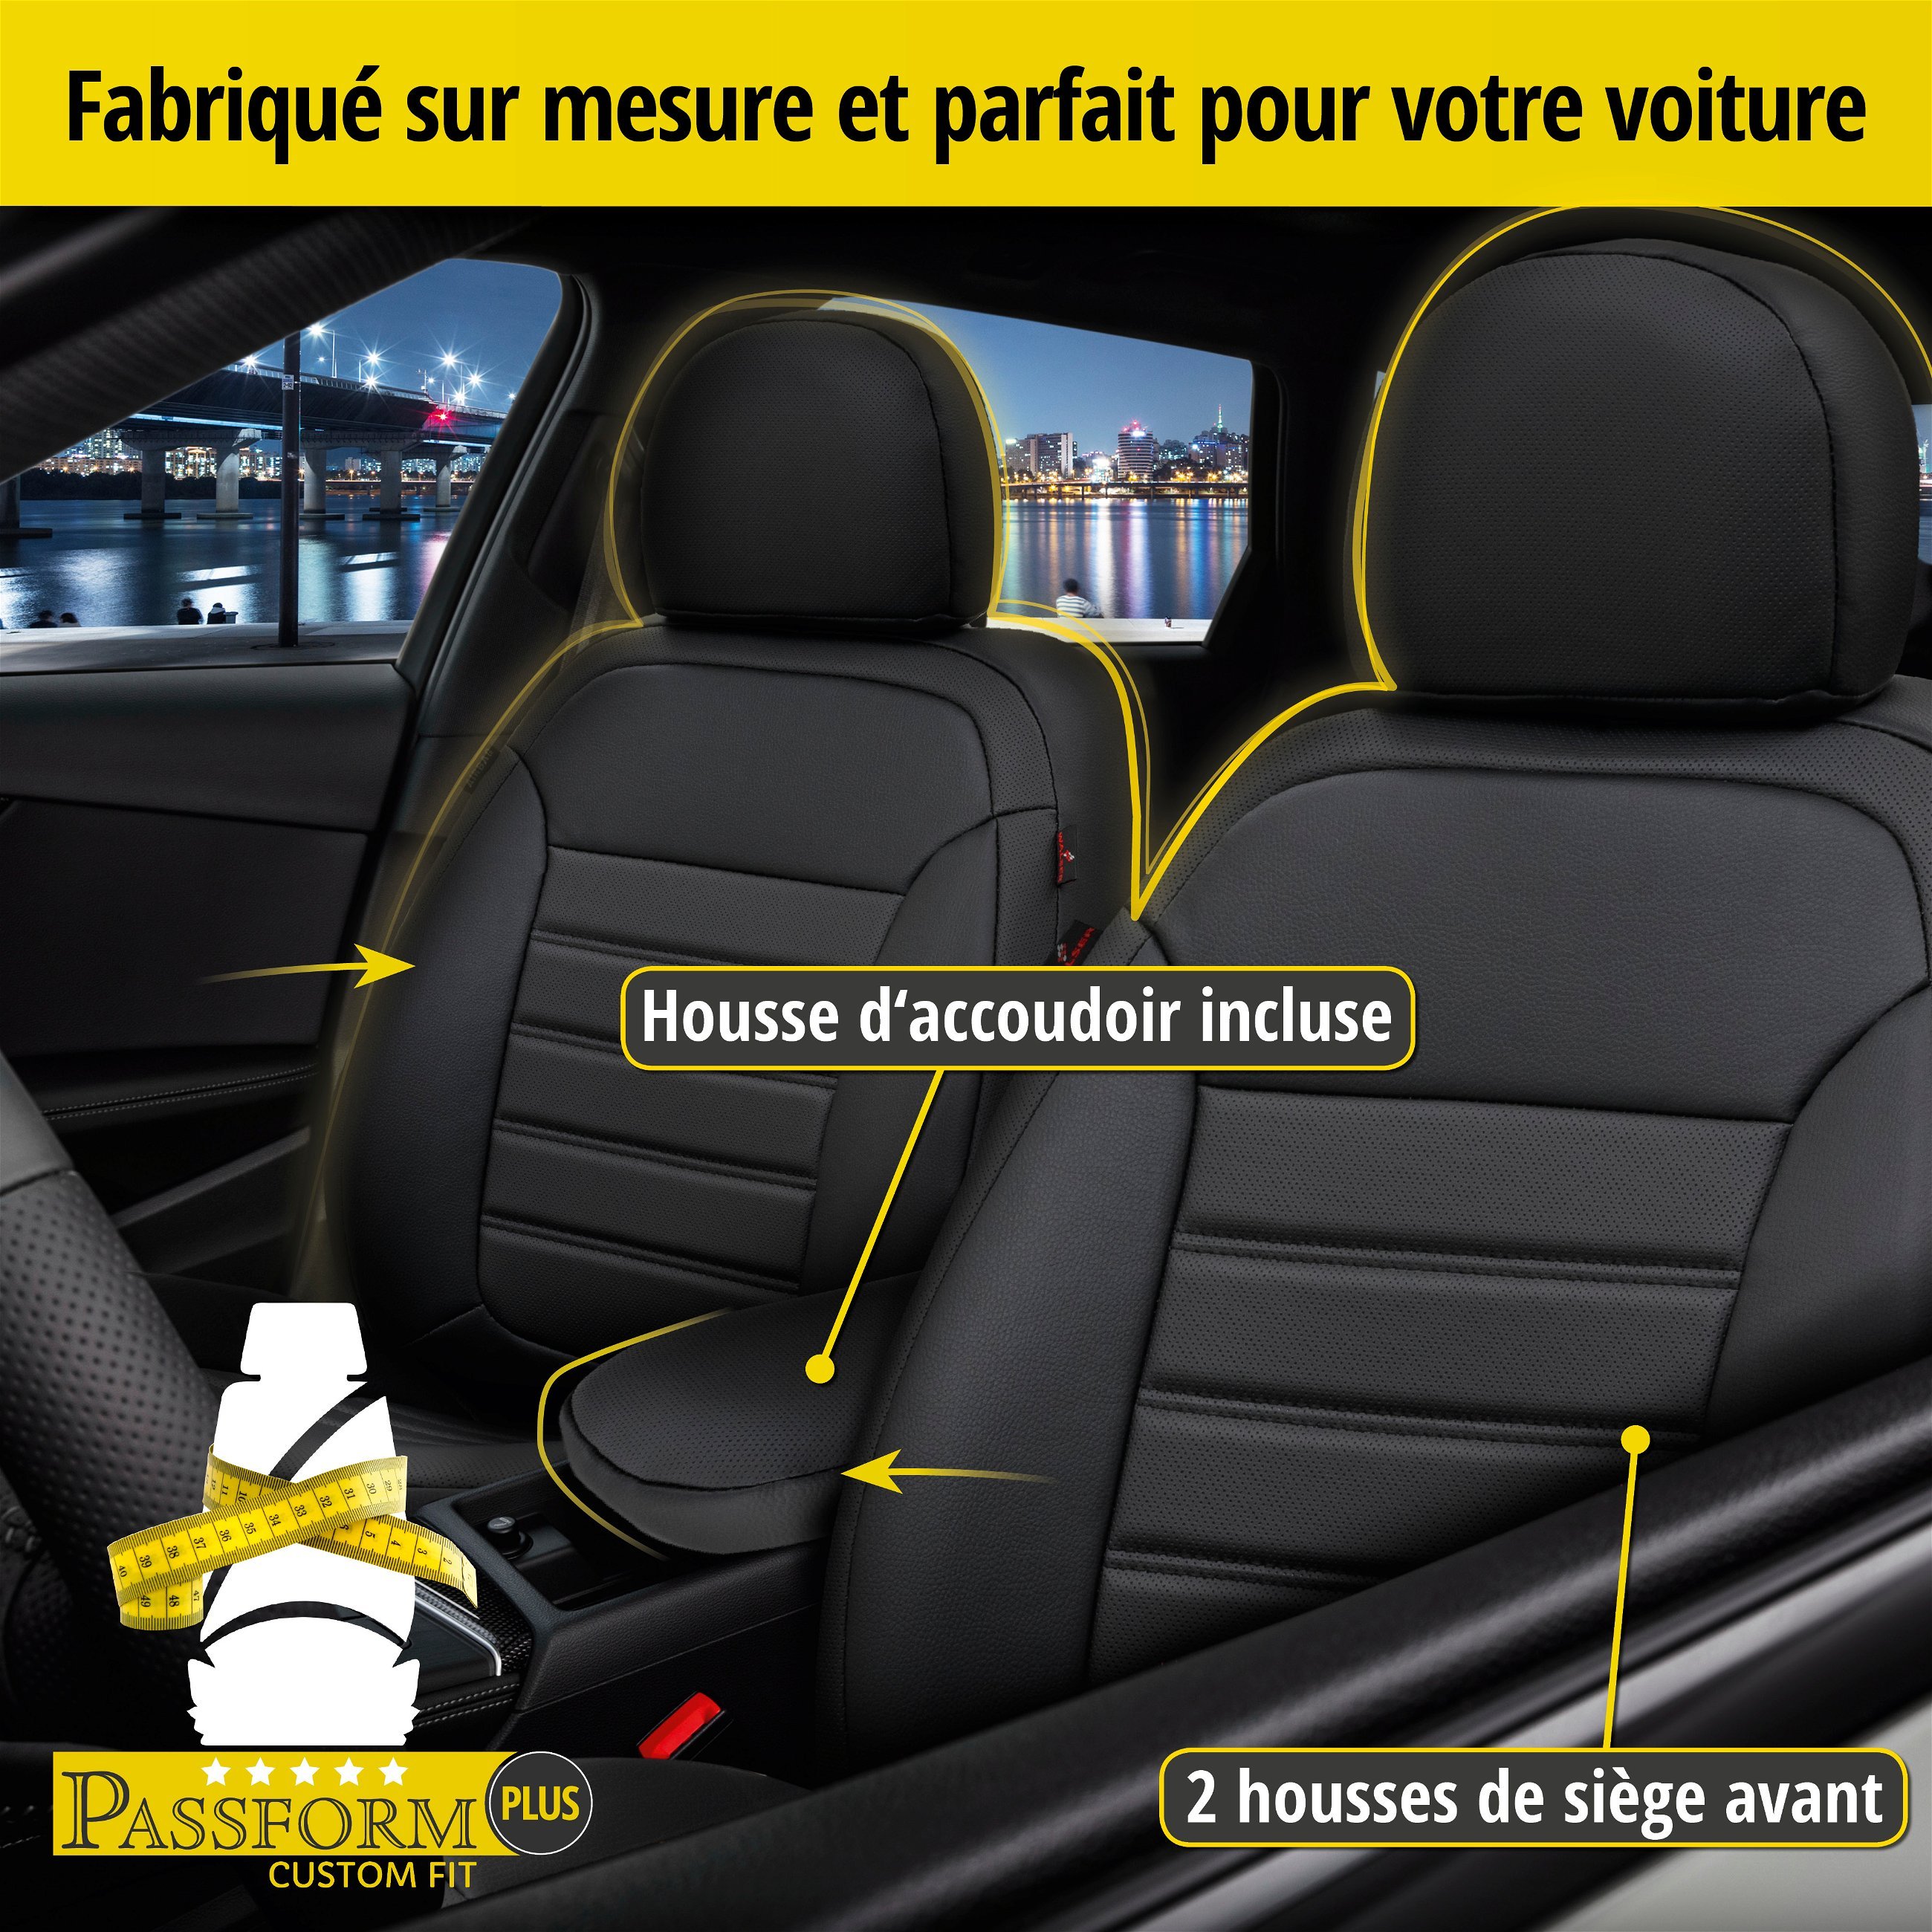 Housse de siège Robusto pour BMW X3 (F25) 09/2010-08/2017, 2 housses de siège pour sièges normaux